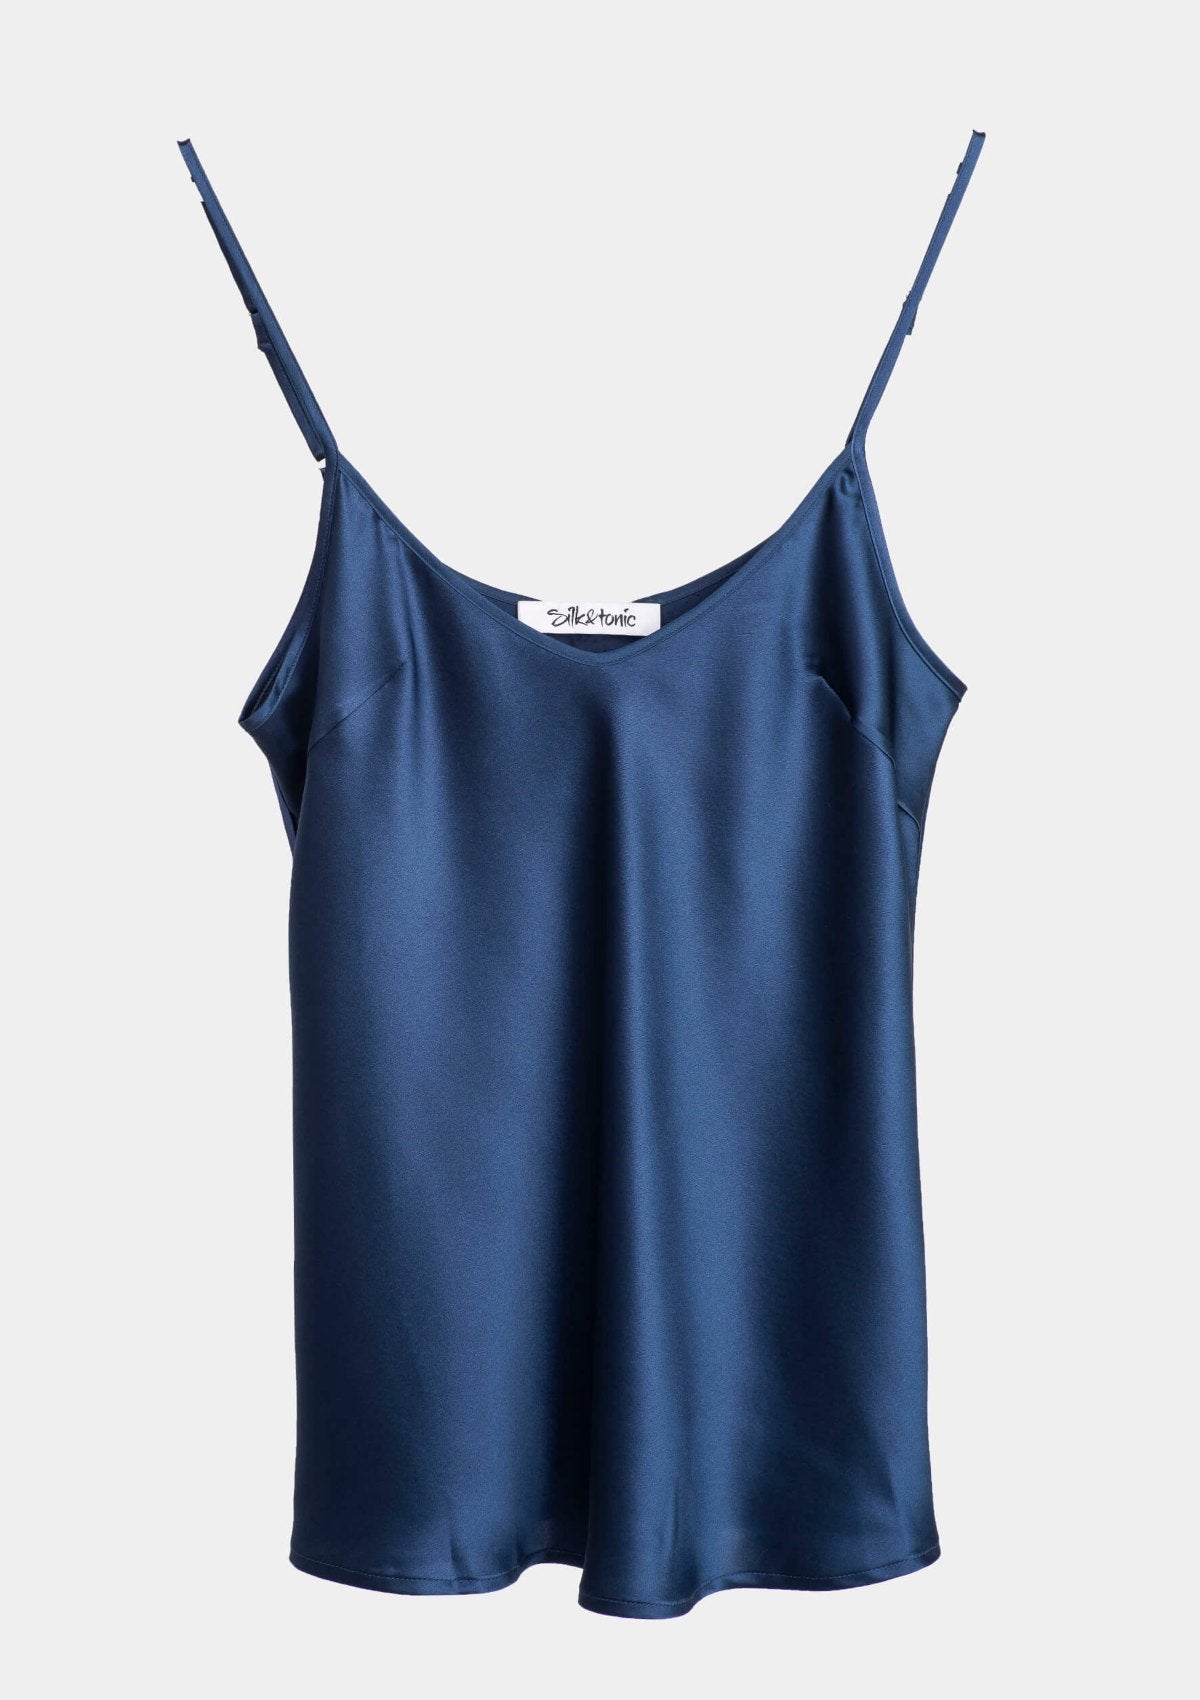 Navy Blue Silk Camisole Top